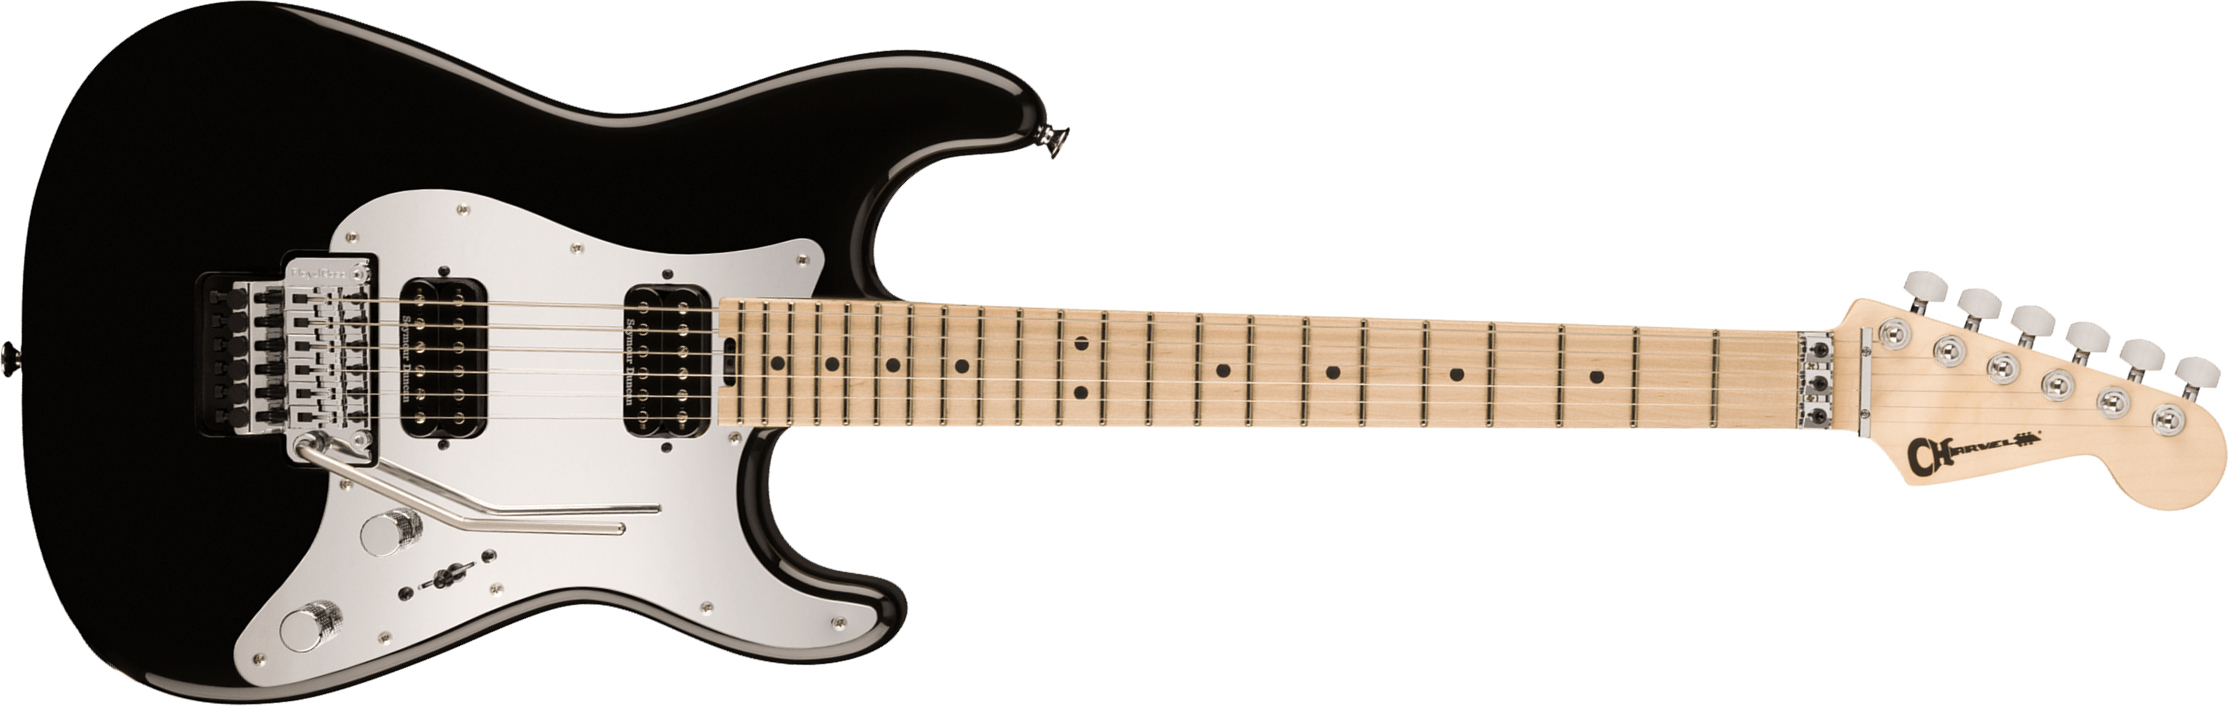 Charvel Pro-mod So-cal Style 1 Hh Fr M 2h Seymour Duncan Mn - Gloss Black - Guitare Électrique Forme Str - Main picture